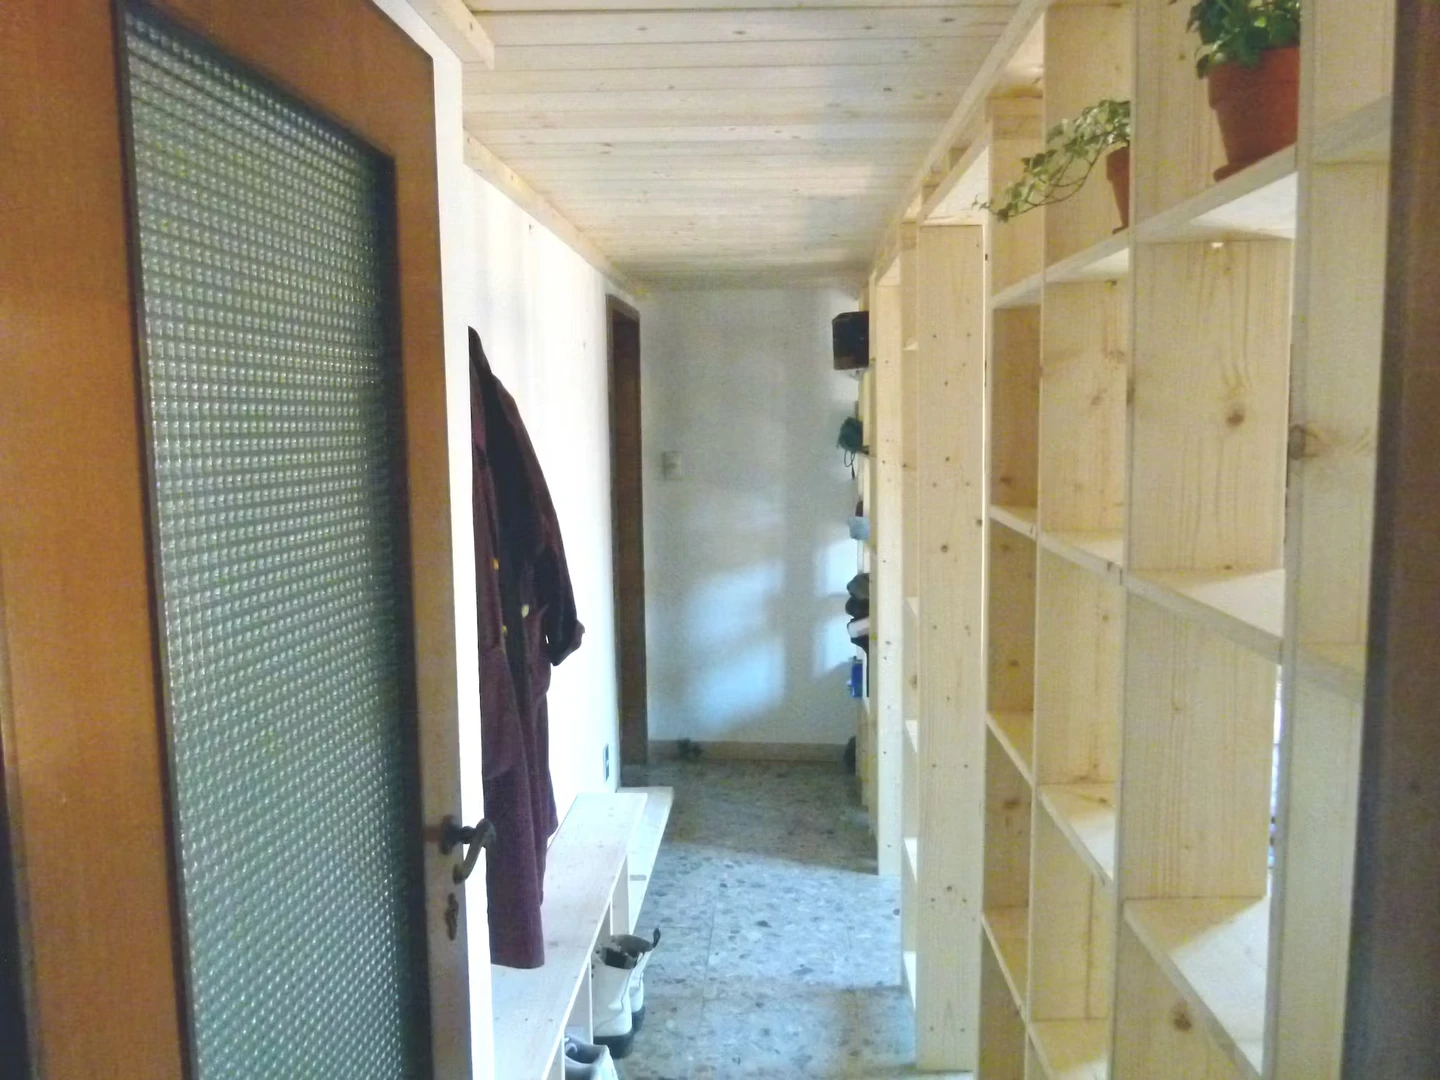 Habitación compartida con otro estudiante en Bolonia